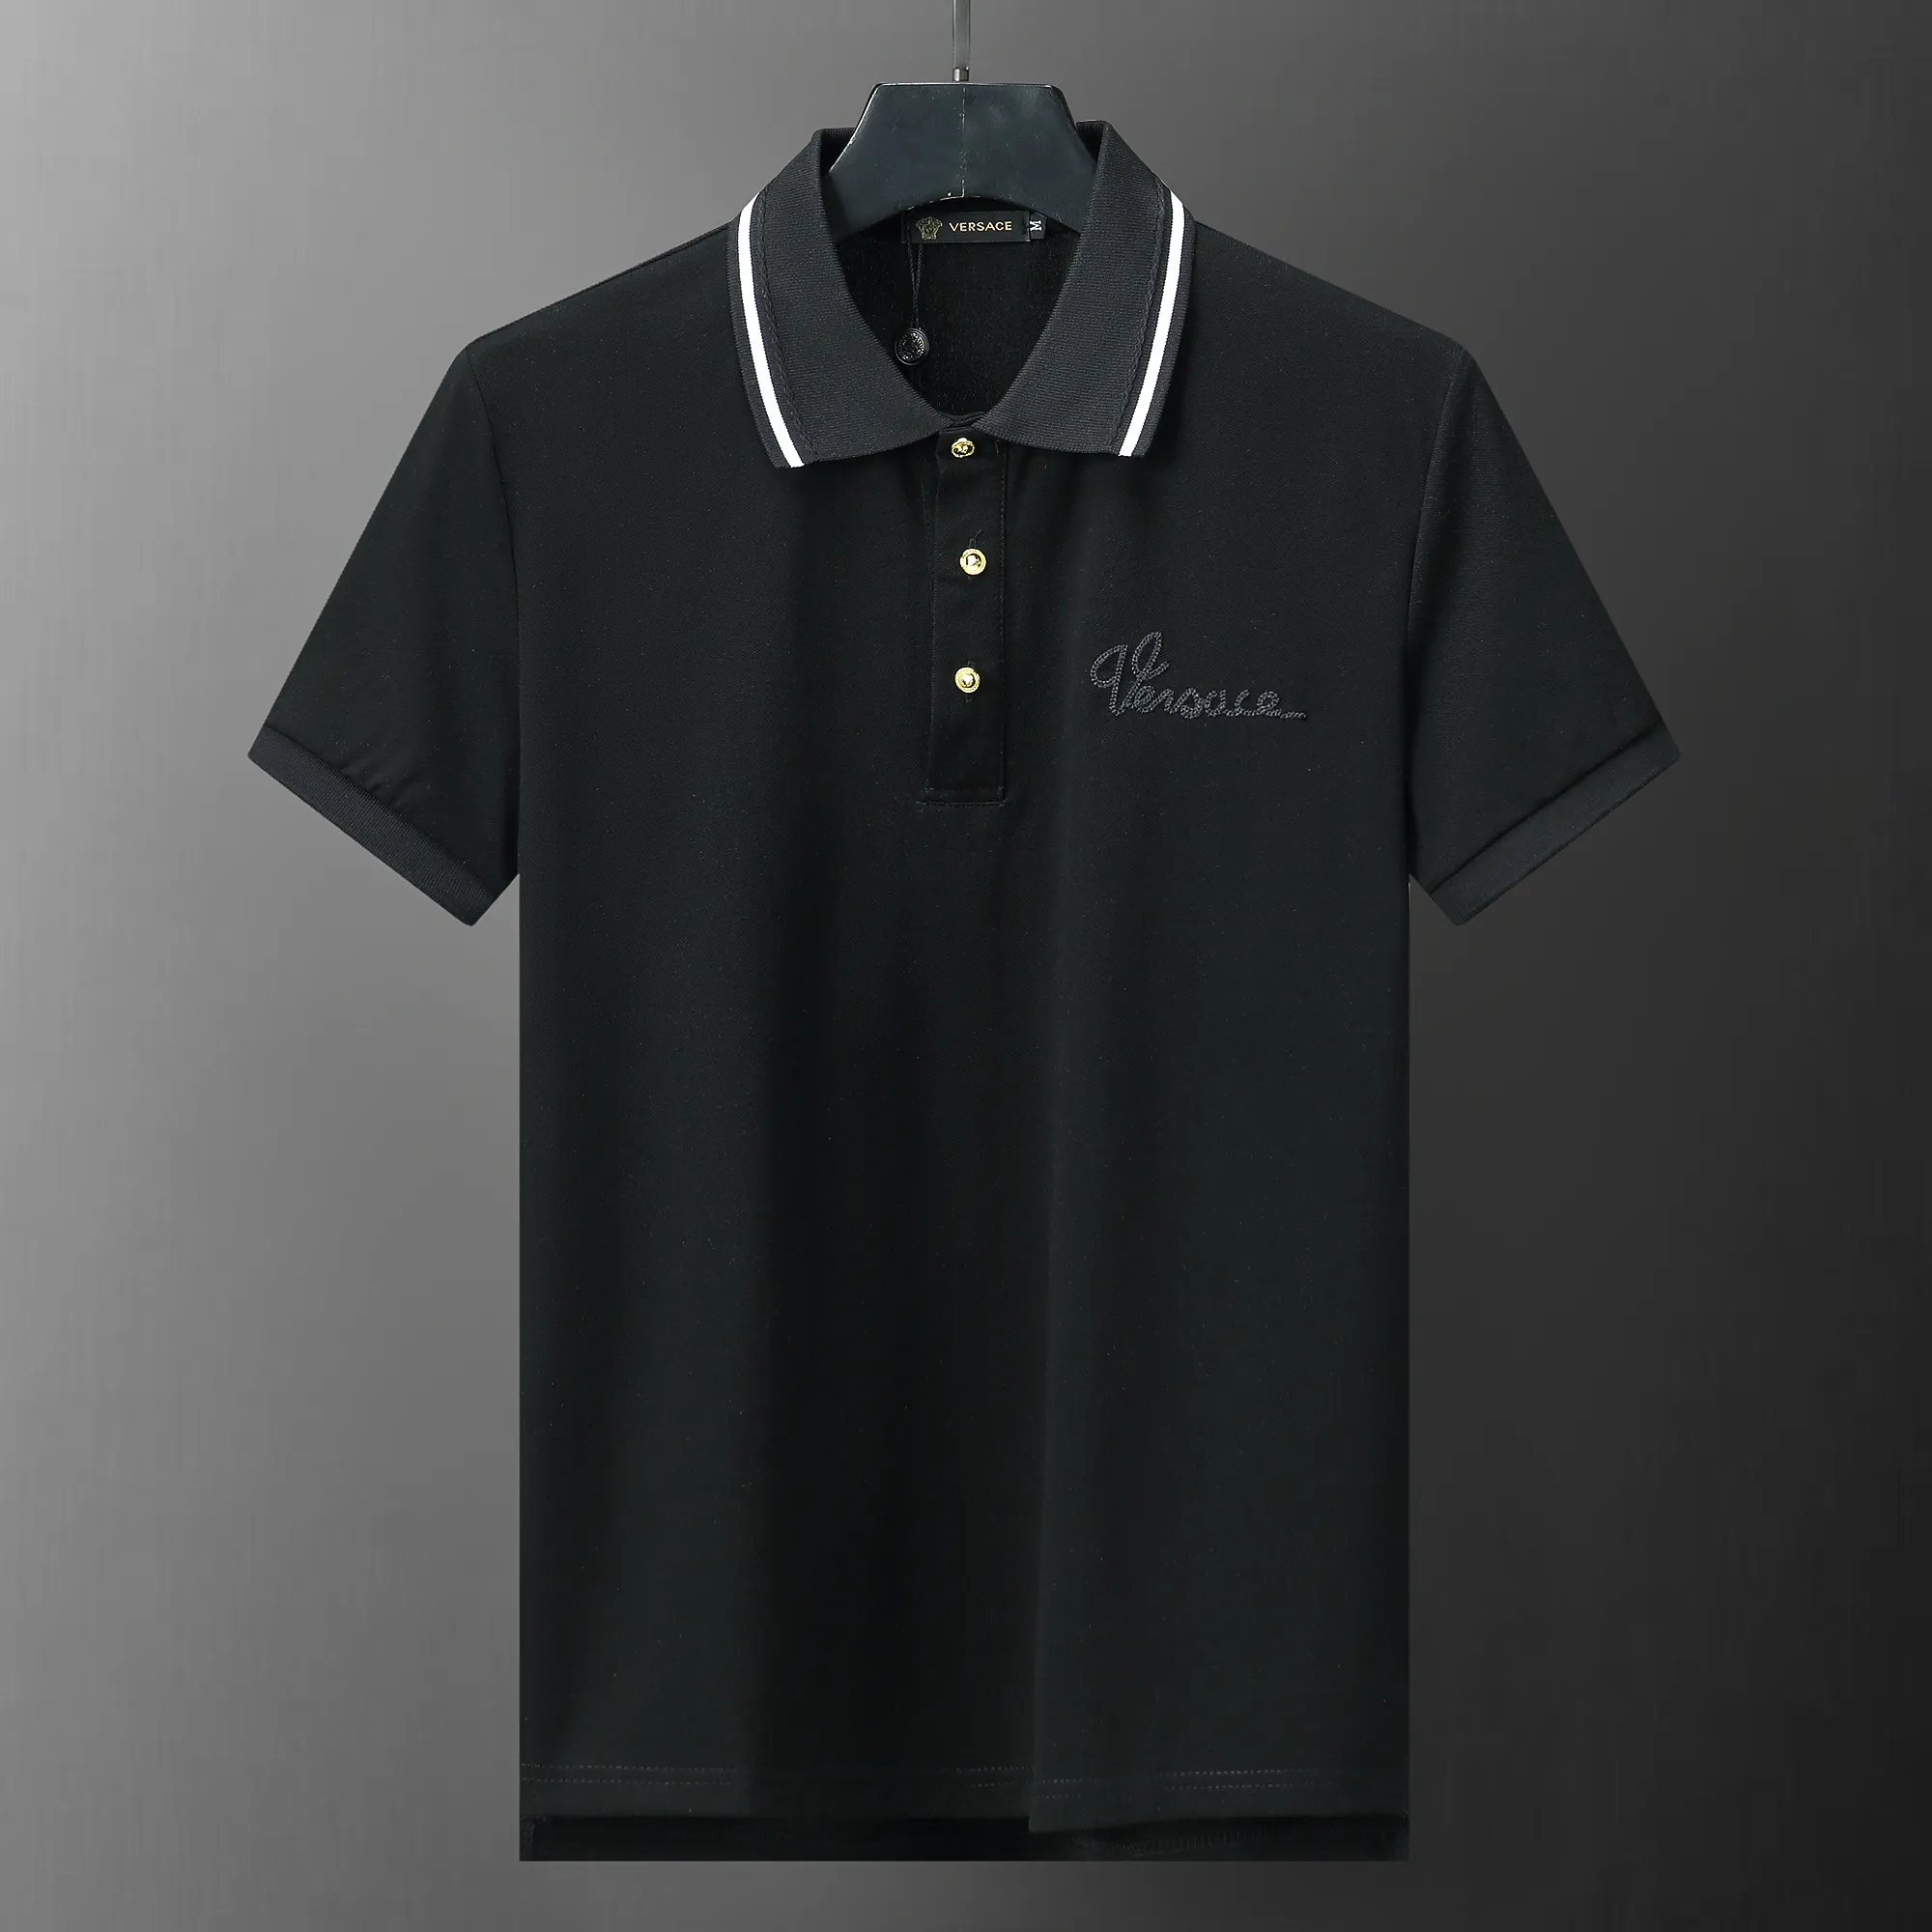 SS24 Summer v30031 Czarna nowa moda marka Mężczyzny Polo T-shirty krótkie dopasowanie Slim Casual Desinger Cotton US GORBAIZE M-3XL